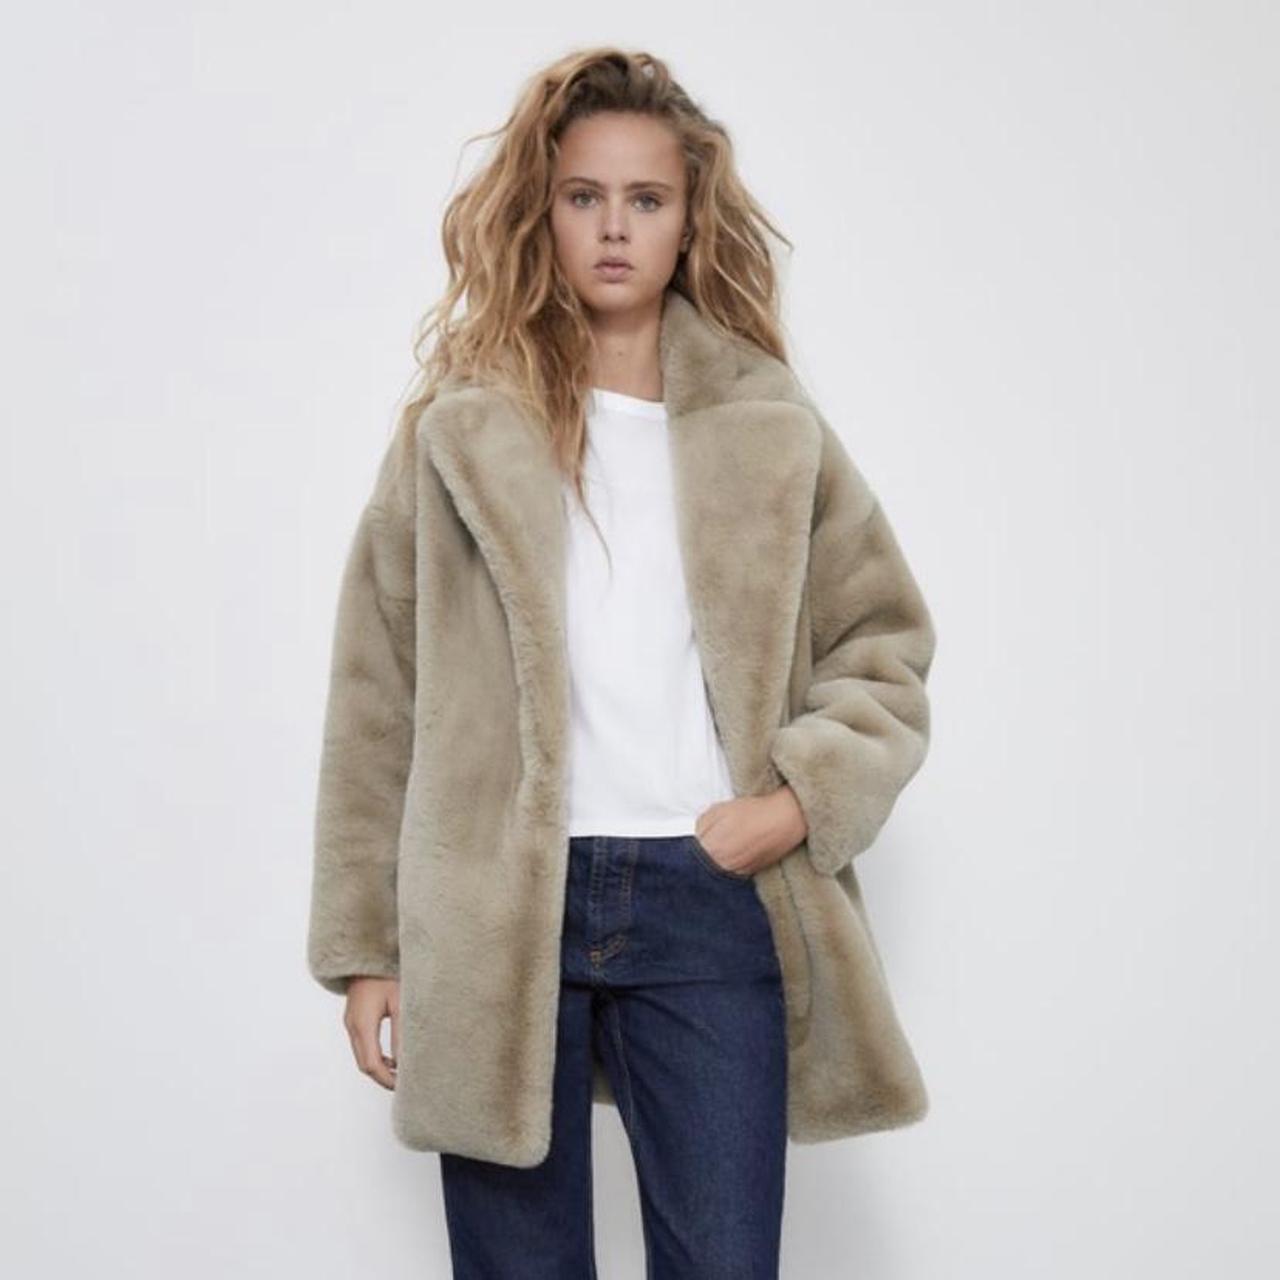 ZARA Faux Fur Fall Winter Coat in Light Brown... - Depop